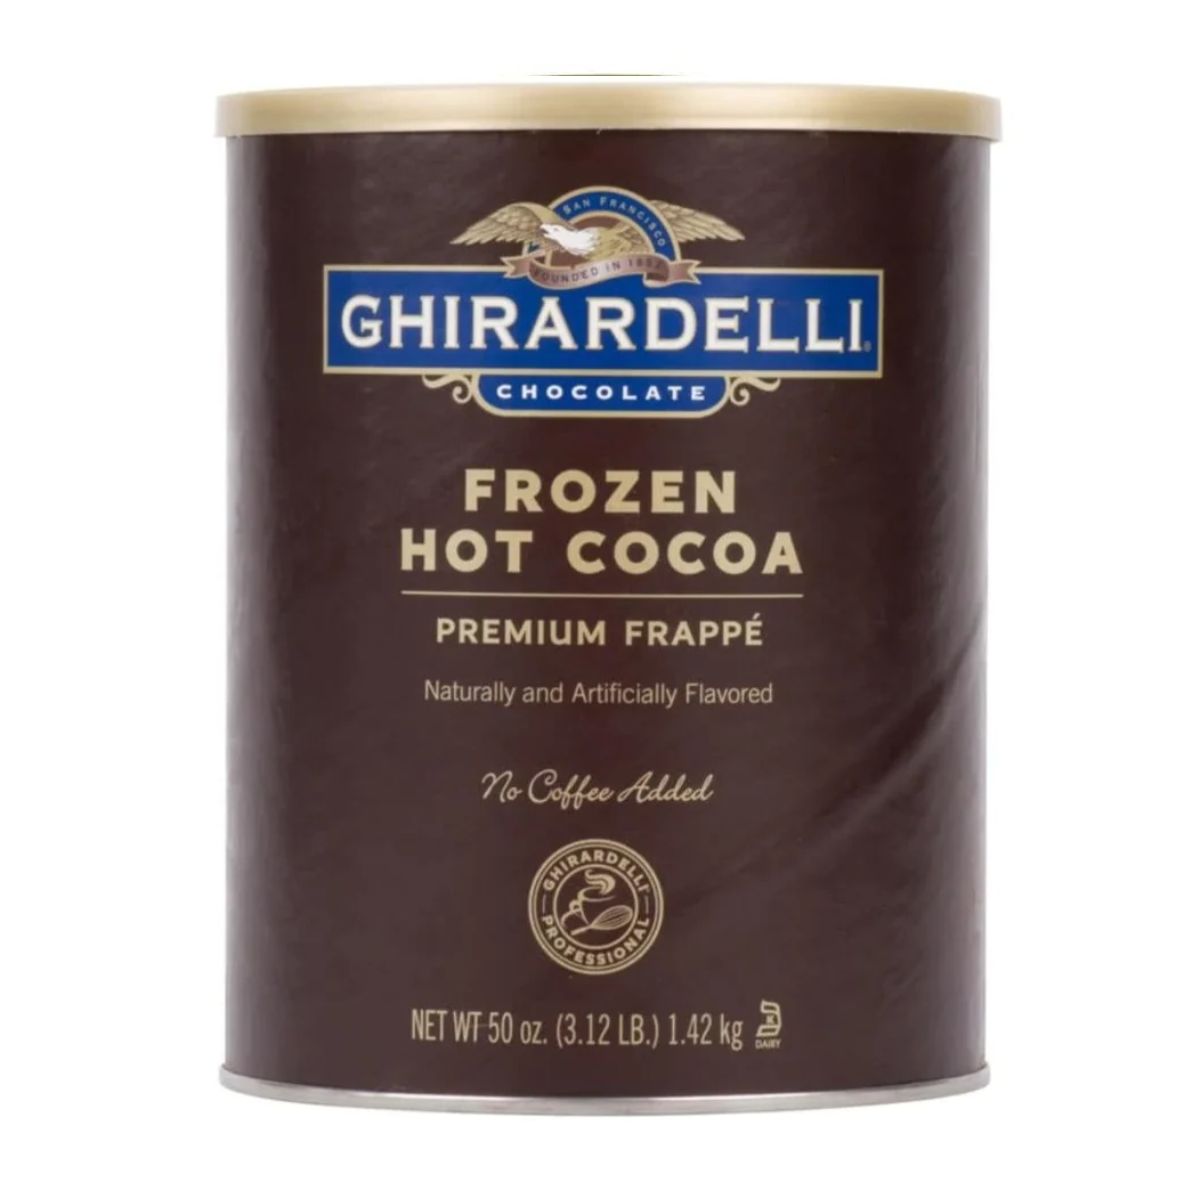 Ghirardelli Frappe Classico - 3.12 lb. Can: Frozen Hot Cocoa